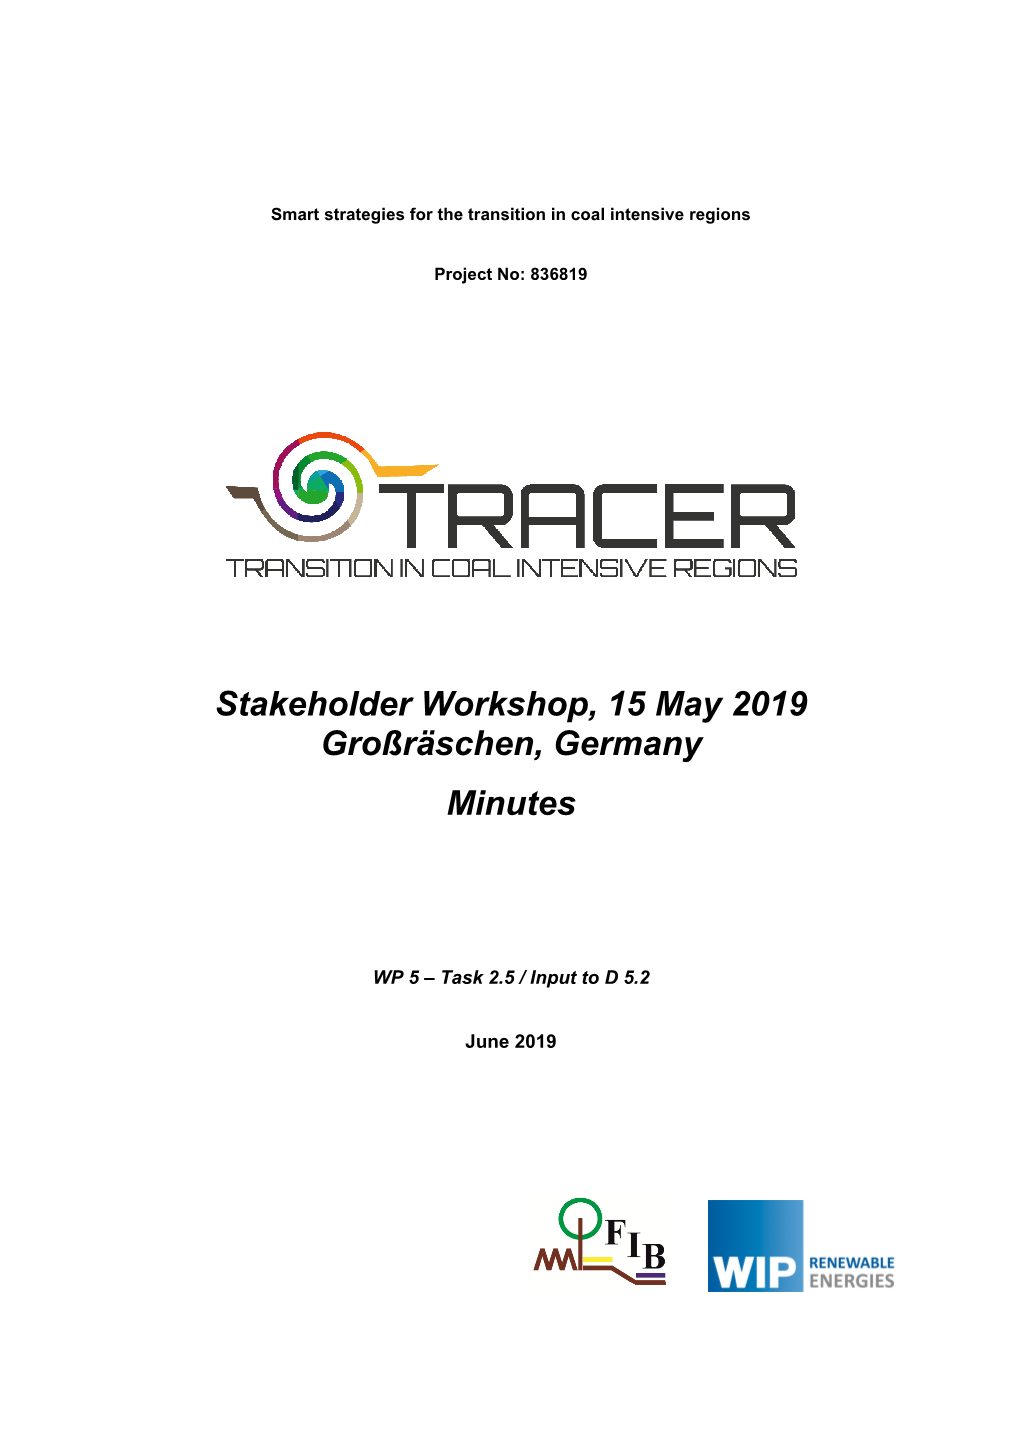 Stakeholder Workshop, 15 May 2019 Großräschen, Germany Minutes